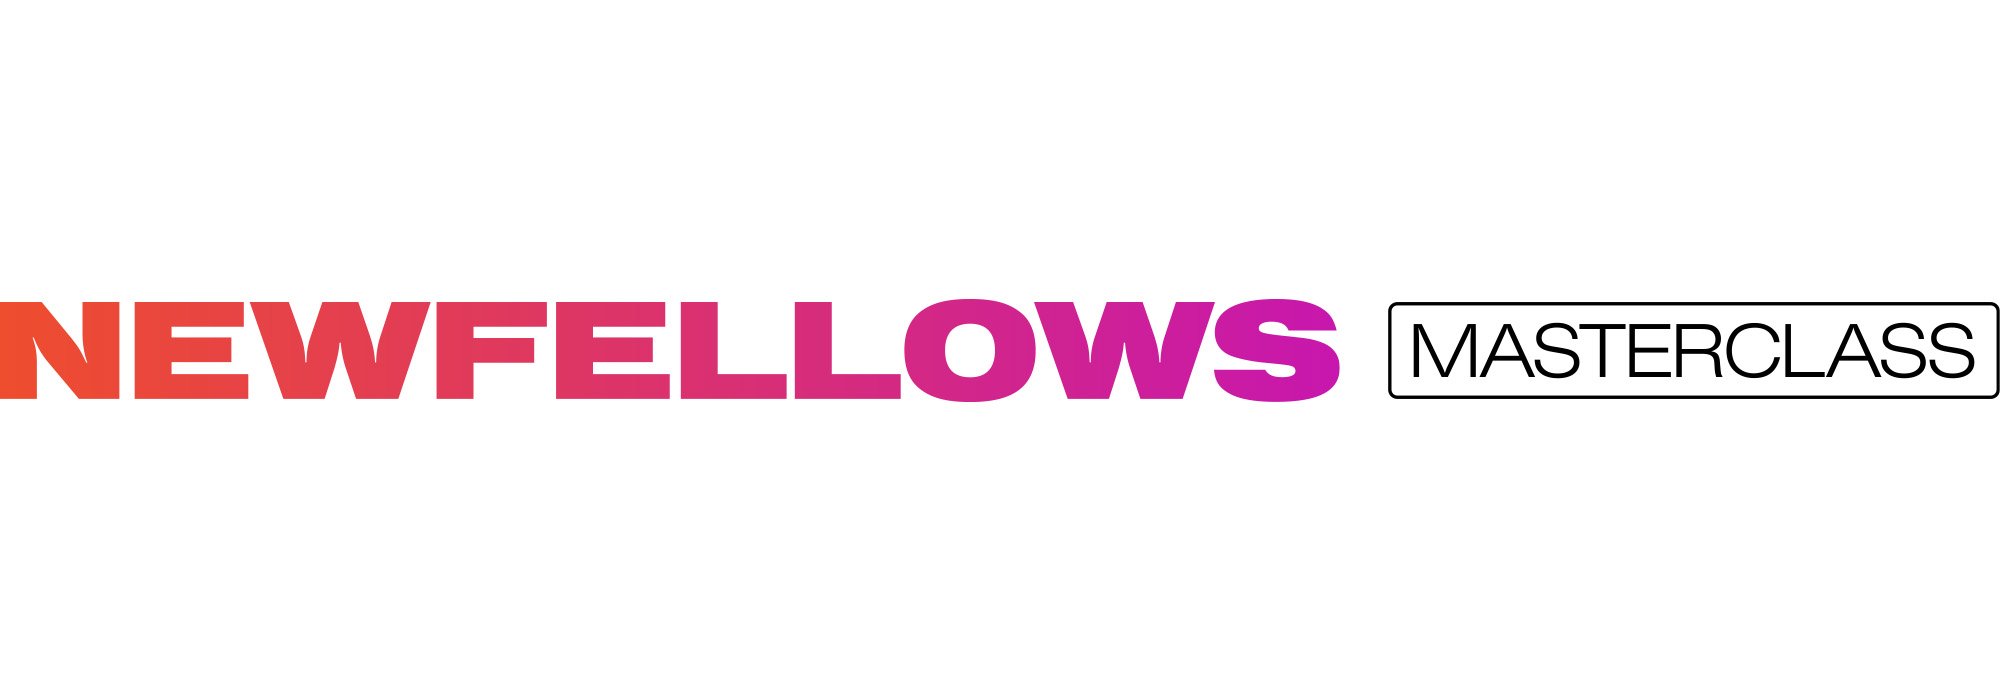 fellowmind - newfellows - masterclass - koulutusohjelma - main - v2.jpg